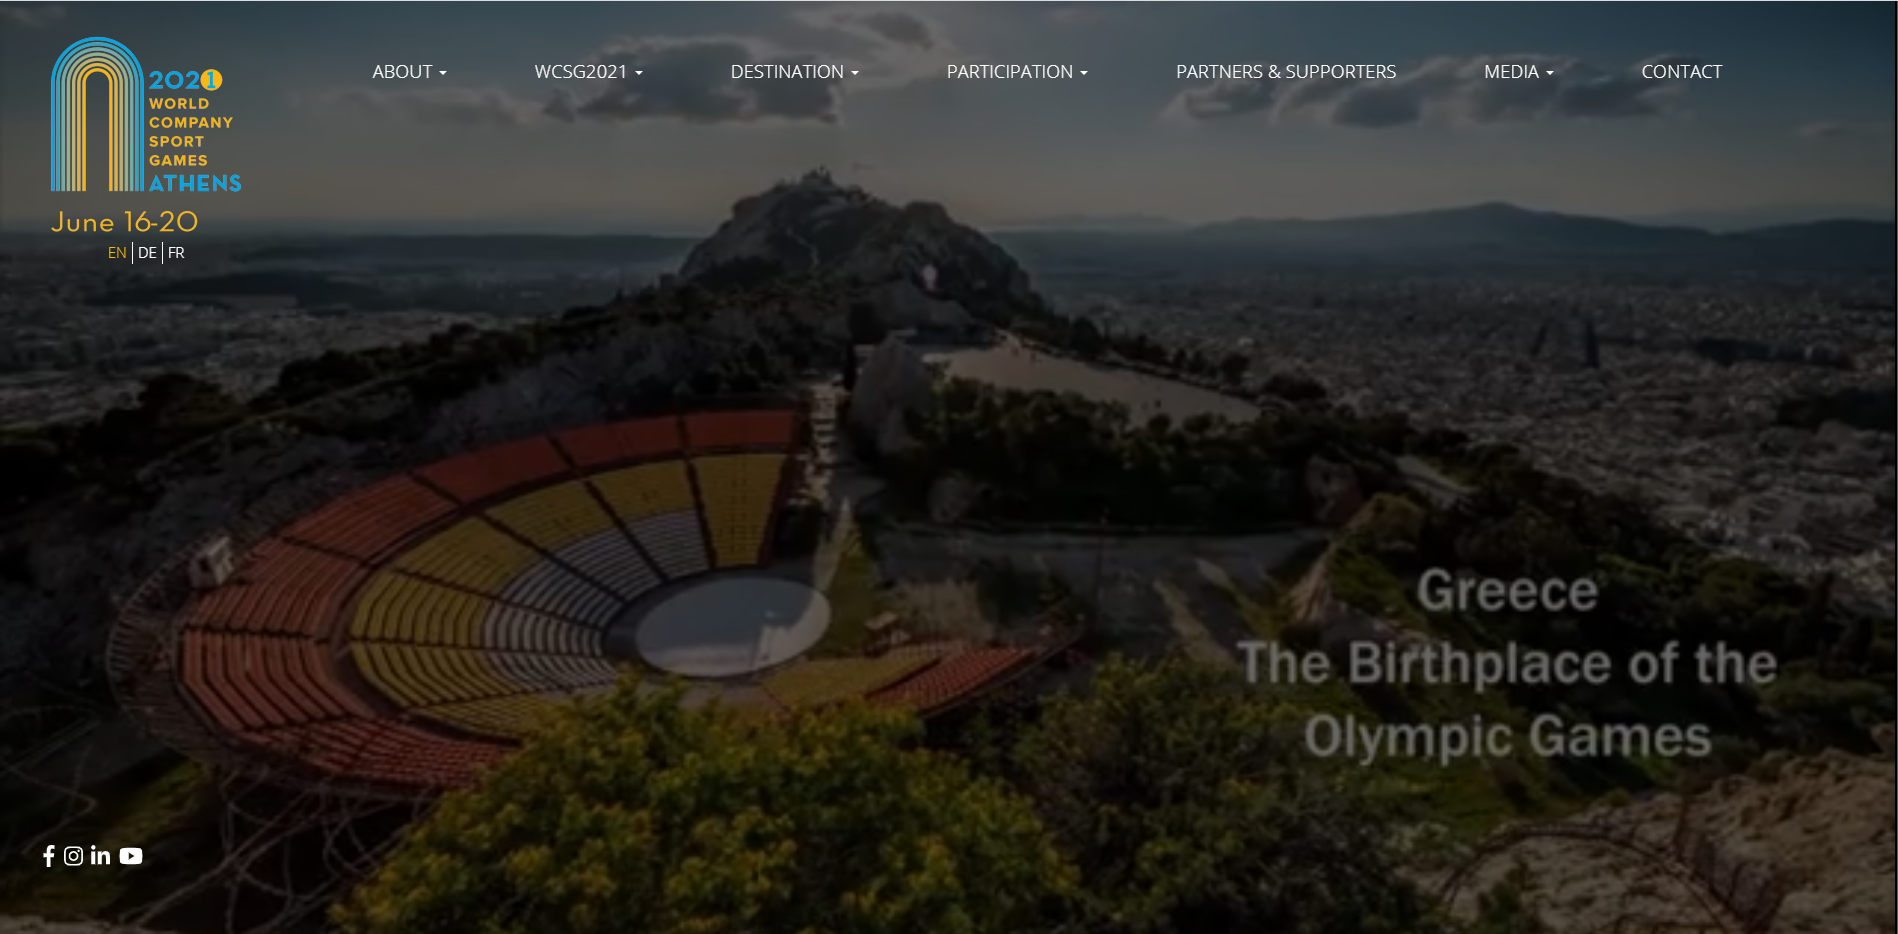 Svetovne igre športa v podjetjih v Atenah prestavljene iz junija na oktober